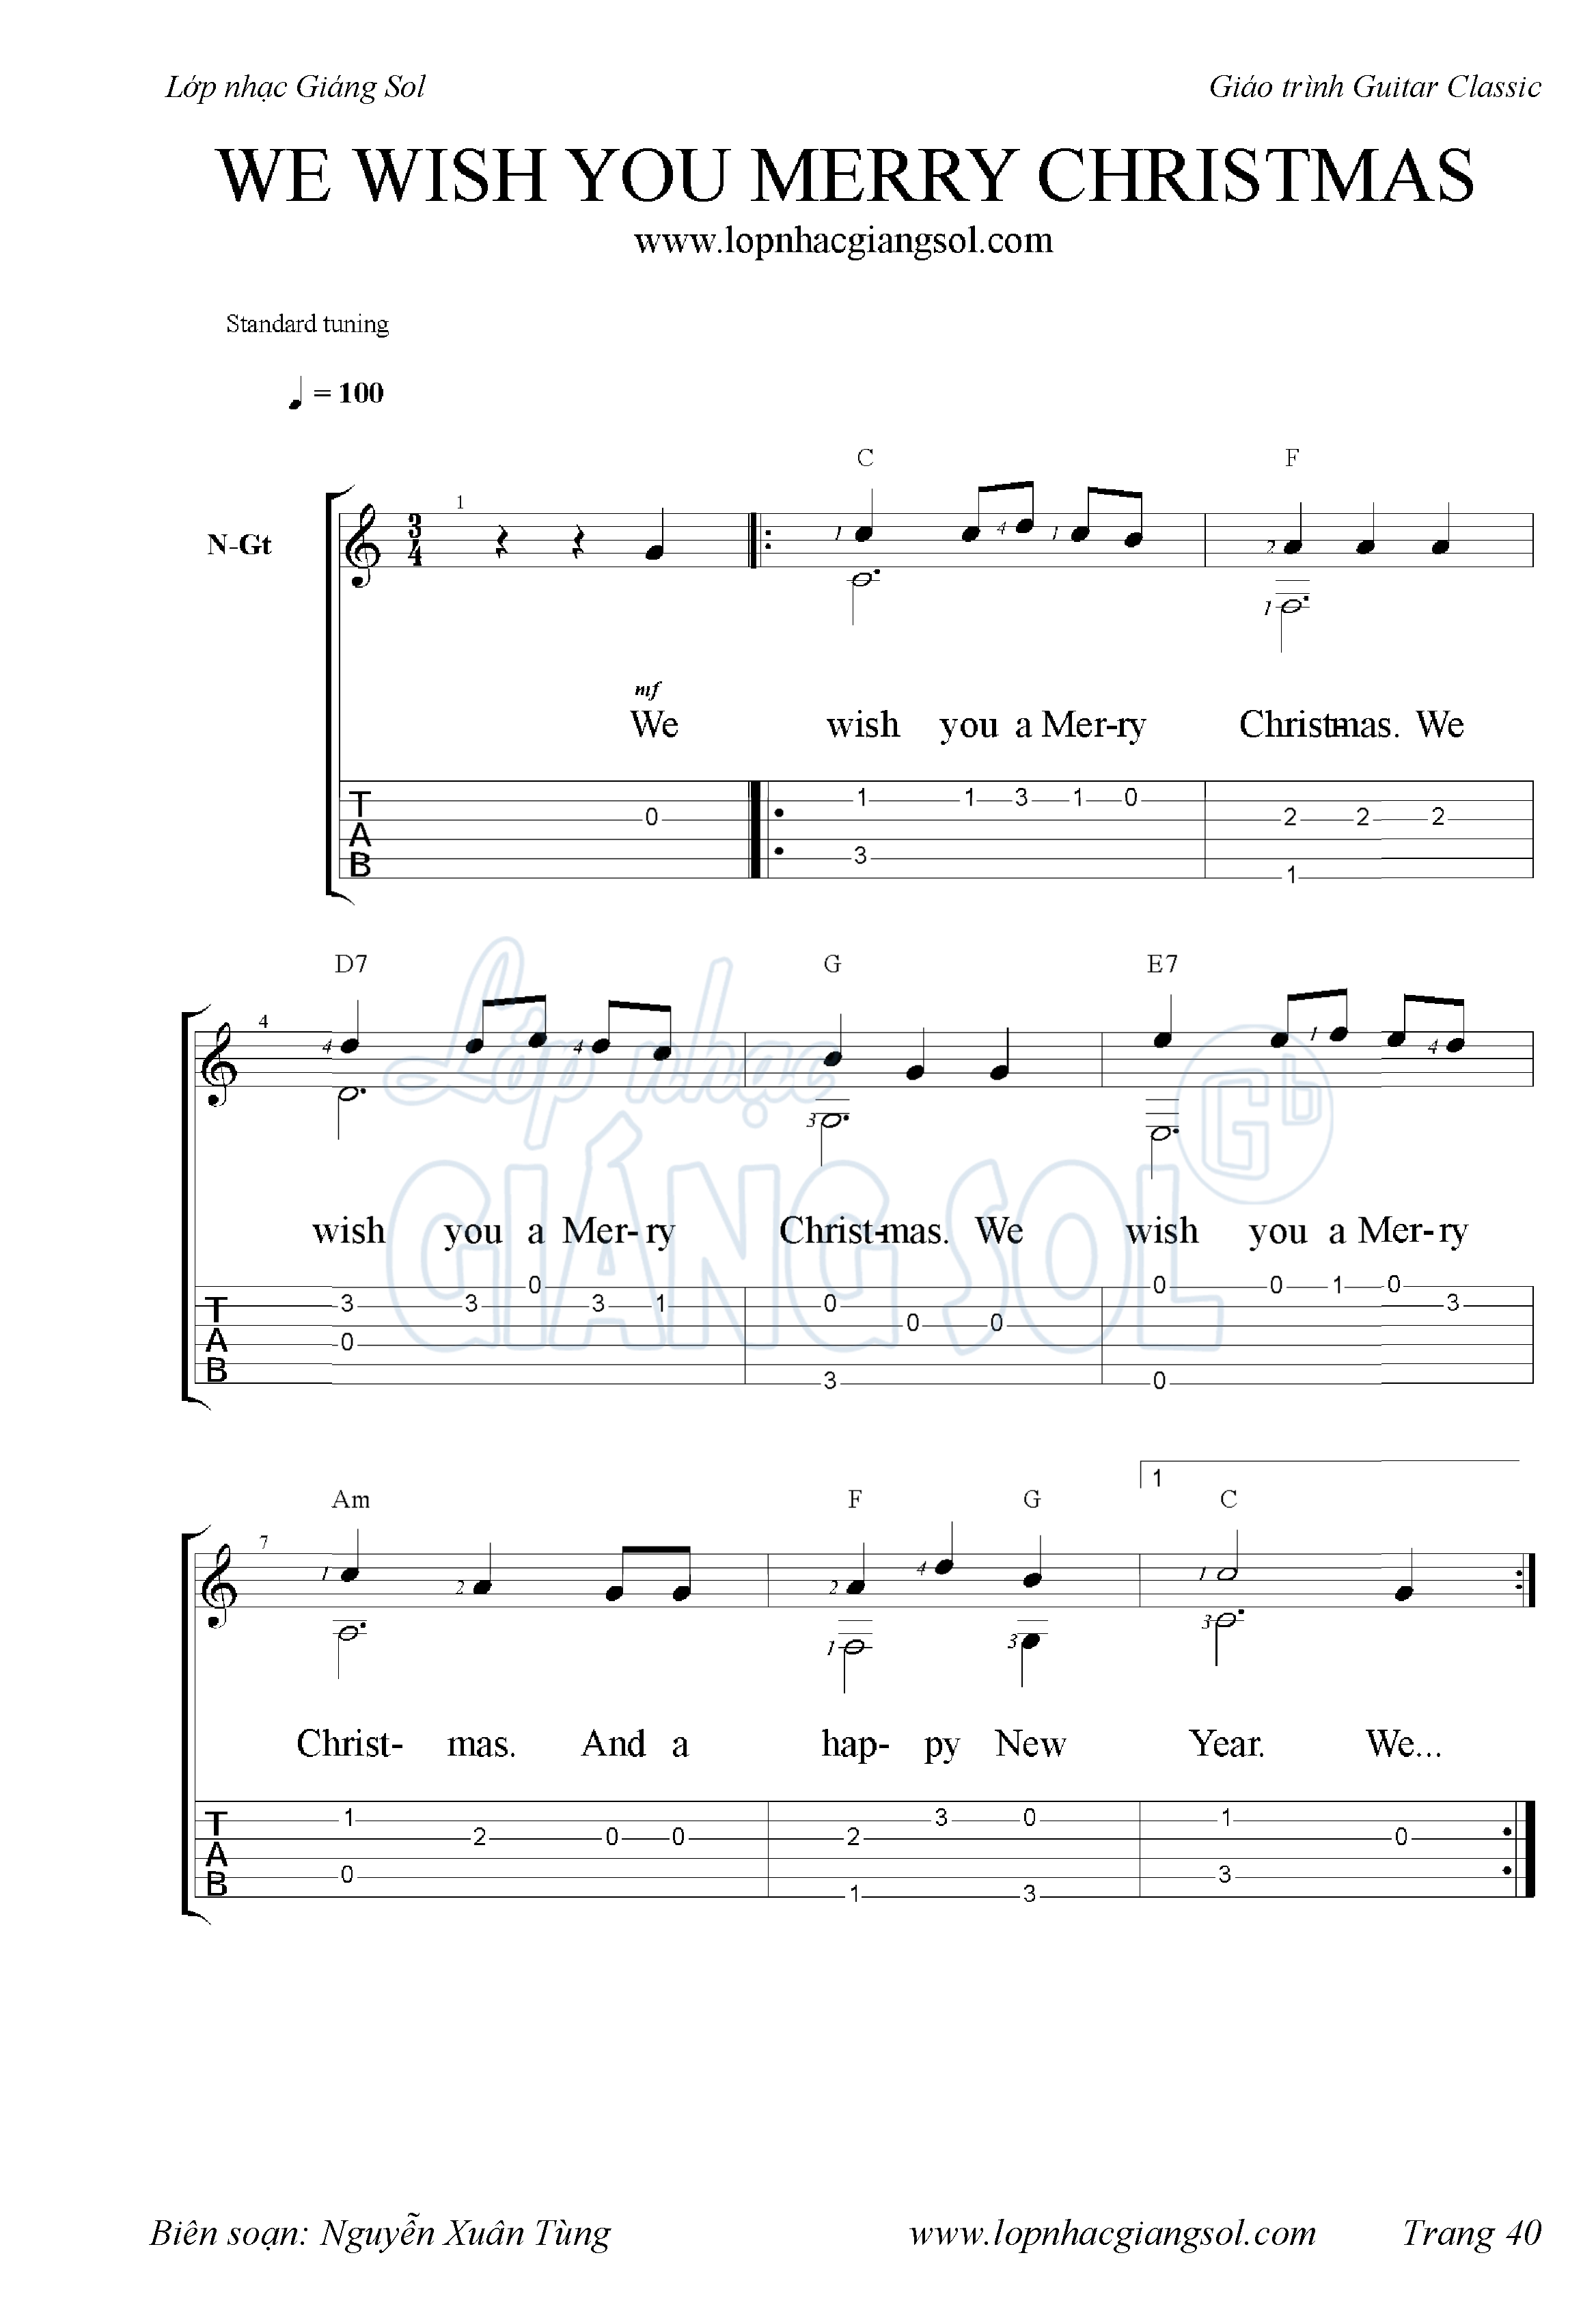 sheet-we-wish-you-merry-christmas-classic-1